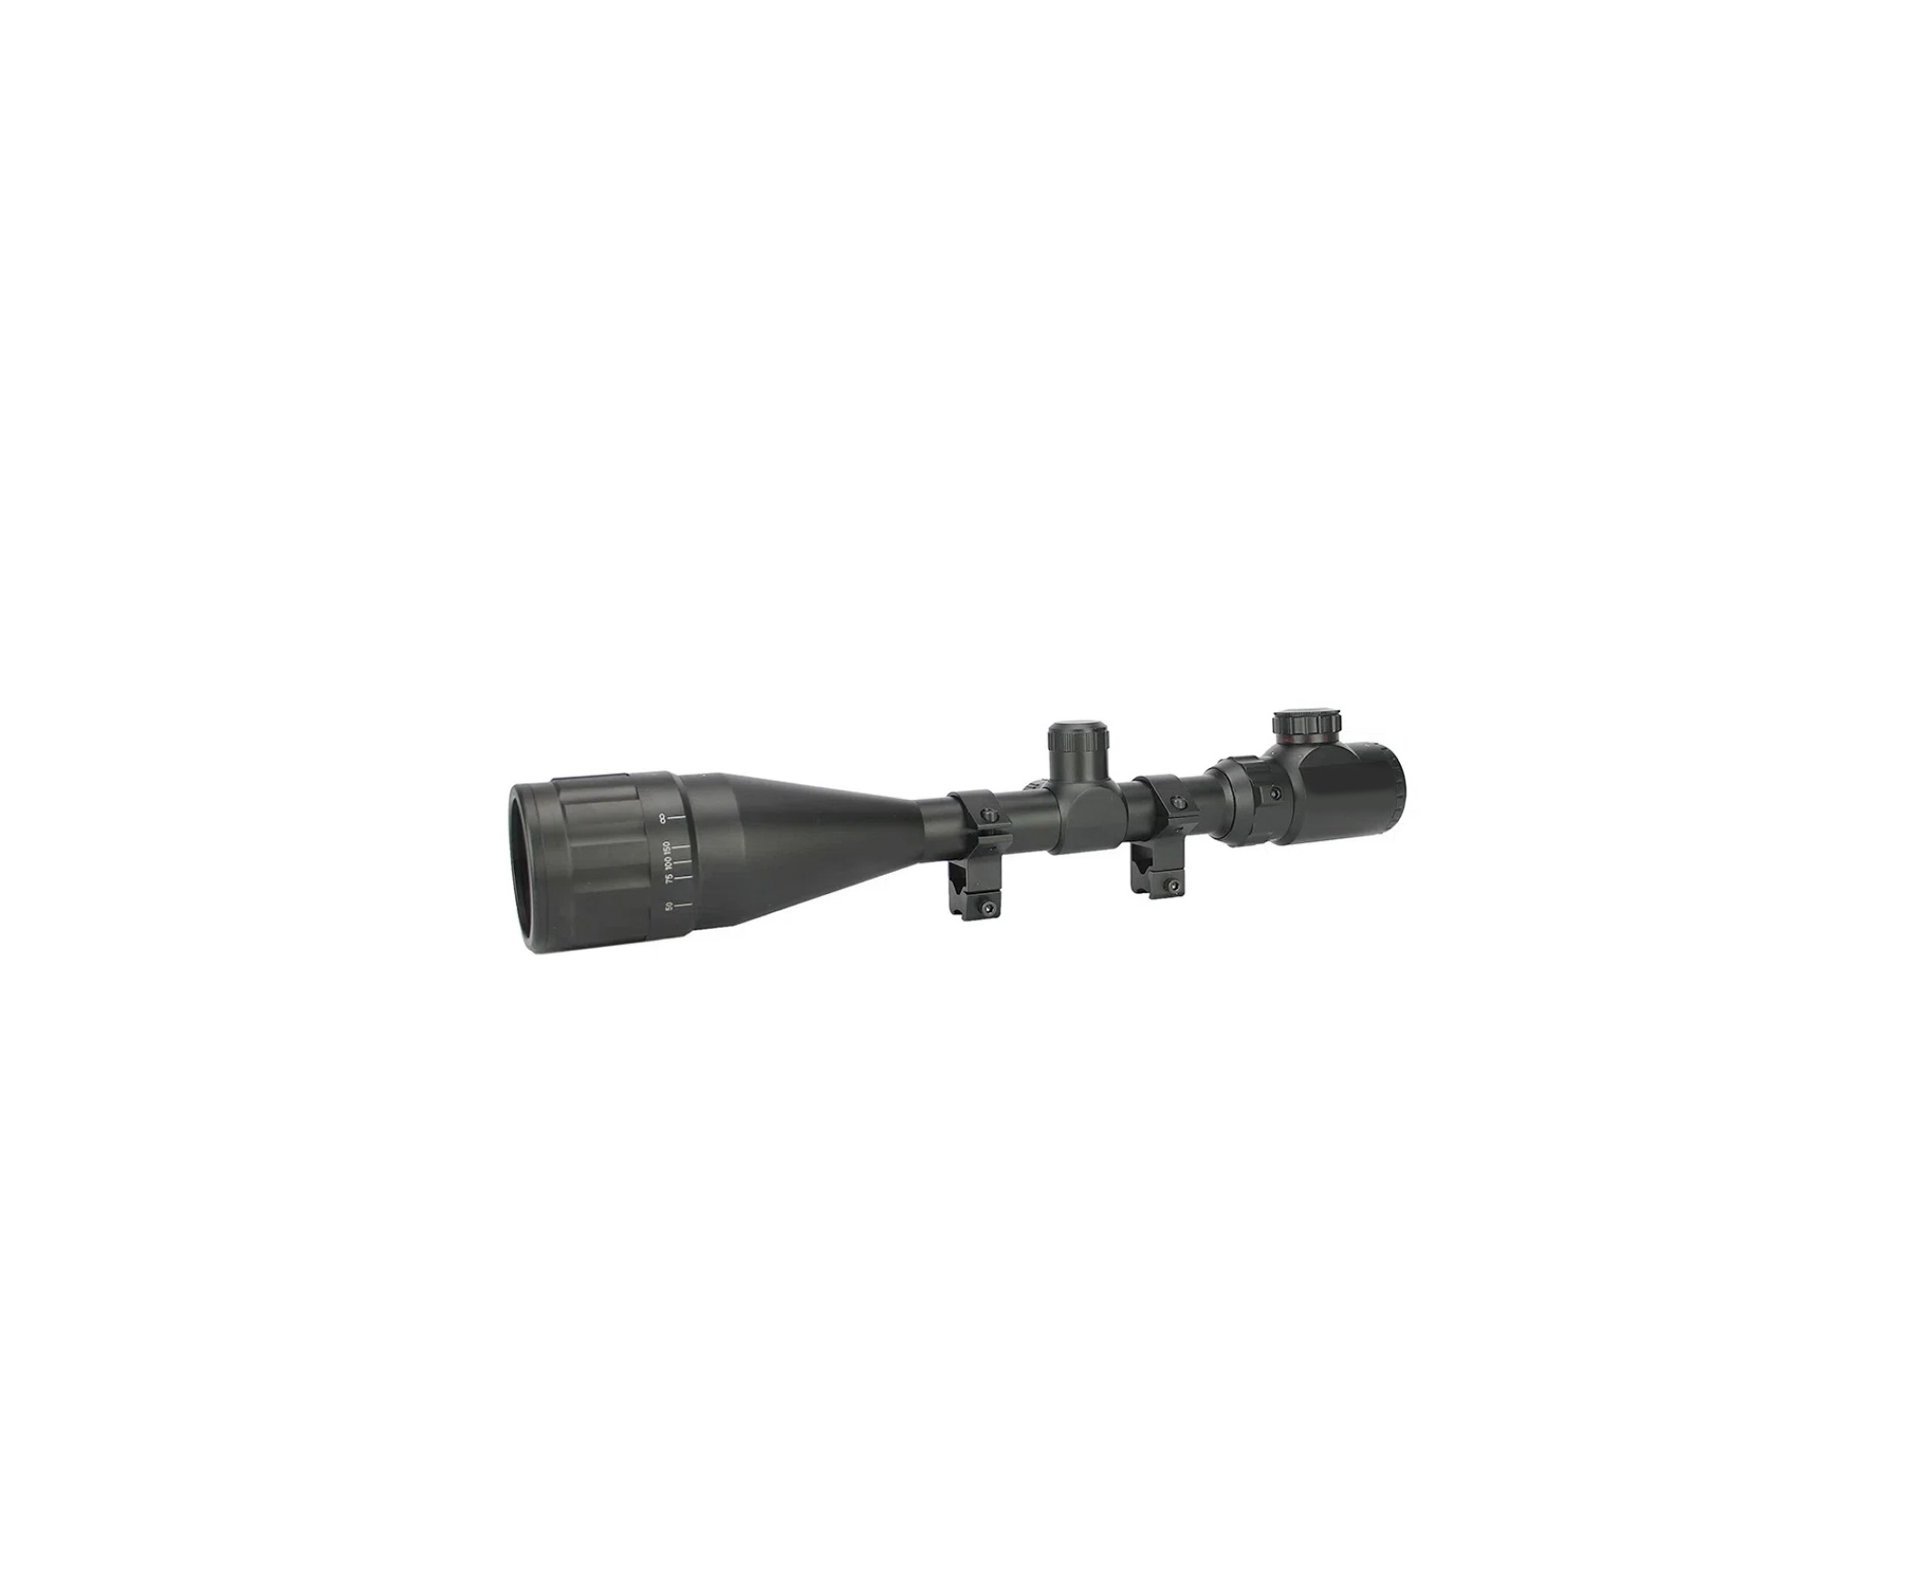 Carabina de Pressão PCP Artemis T-REX 5.5mm com Válvula Reguladora - Fixxar + Bomba + Luneta 4-16x50 + Mount 22mm + Case